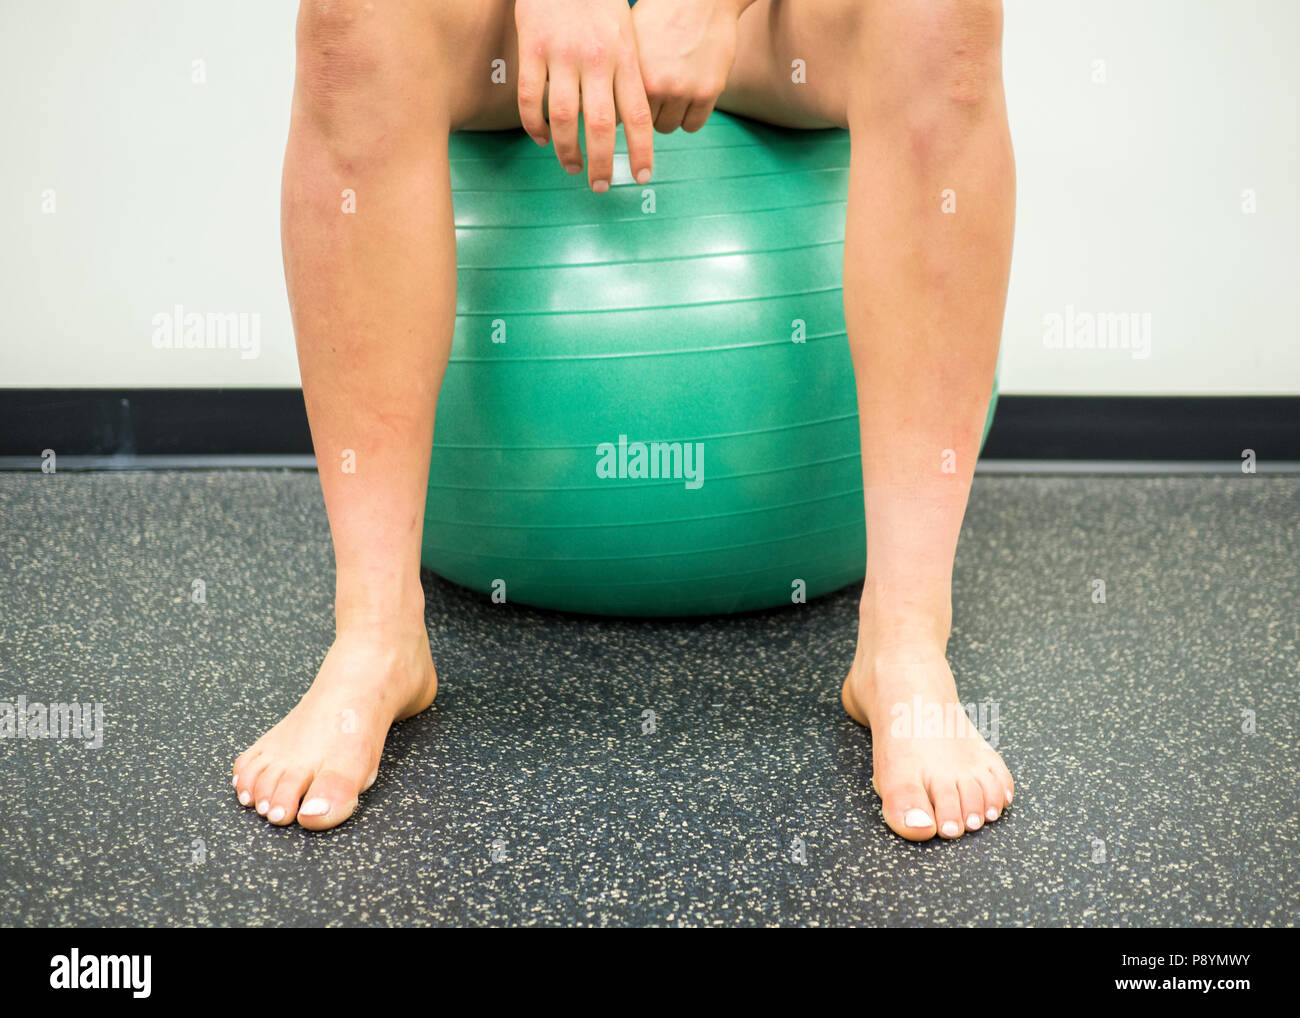 Atleta seduto su un verde palla ginnica prendendo una pausa tra i suoi esercizi Foto Stock